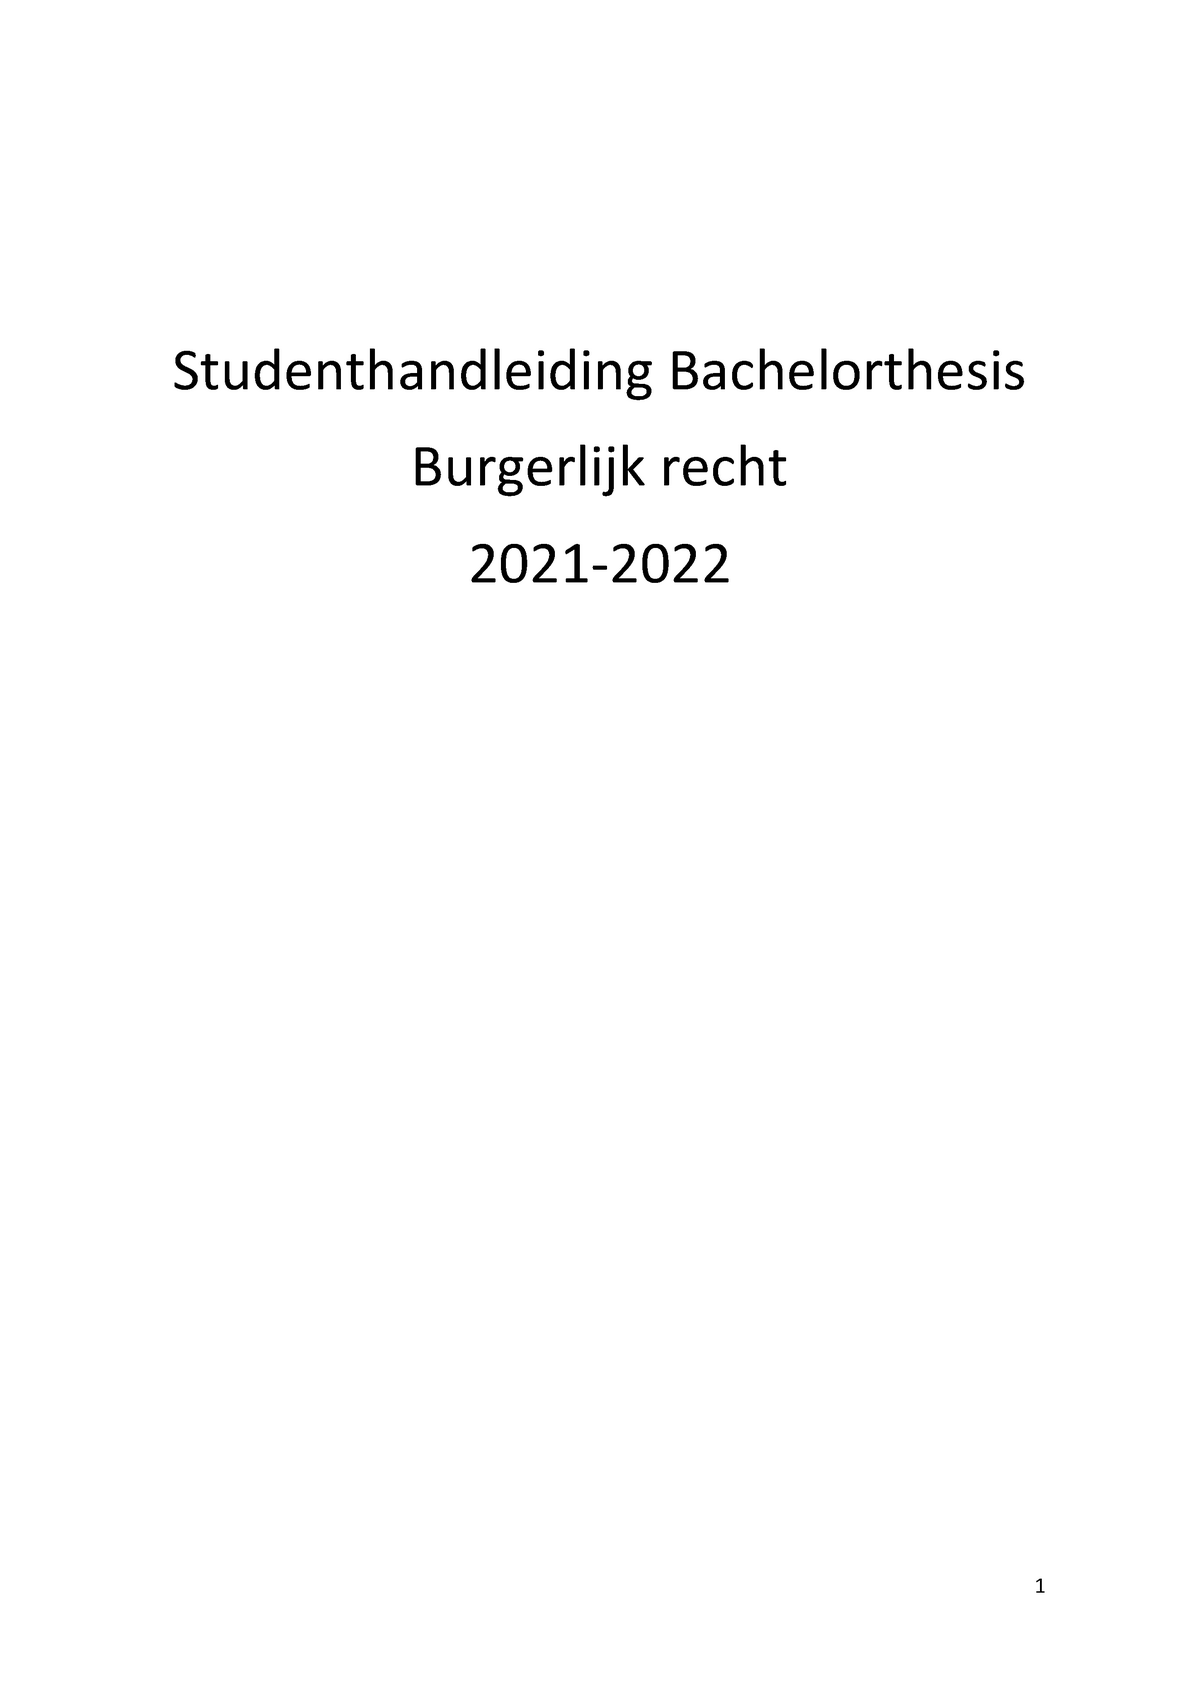 bachelor thesis radboud